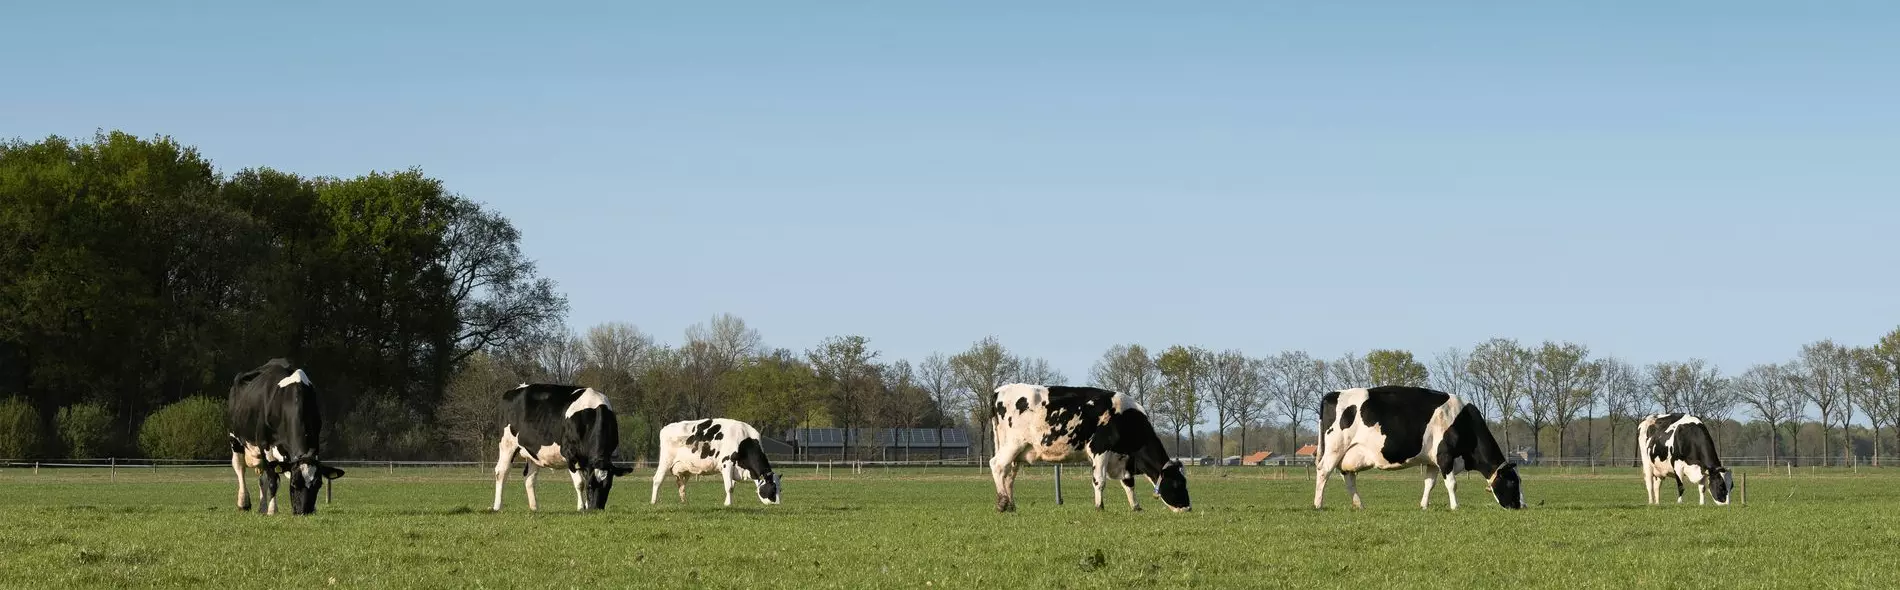 Photo de vaches dans un champ